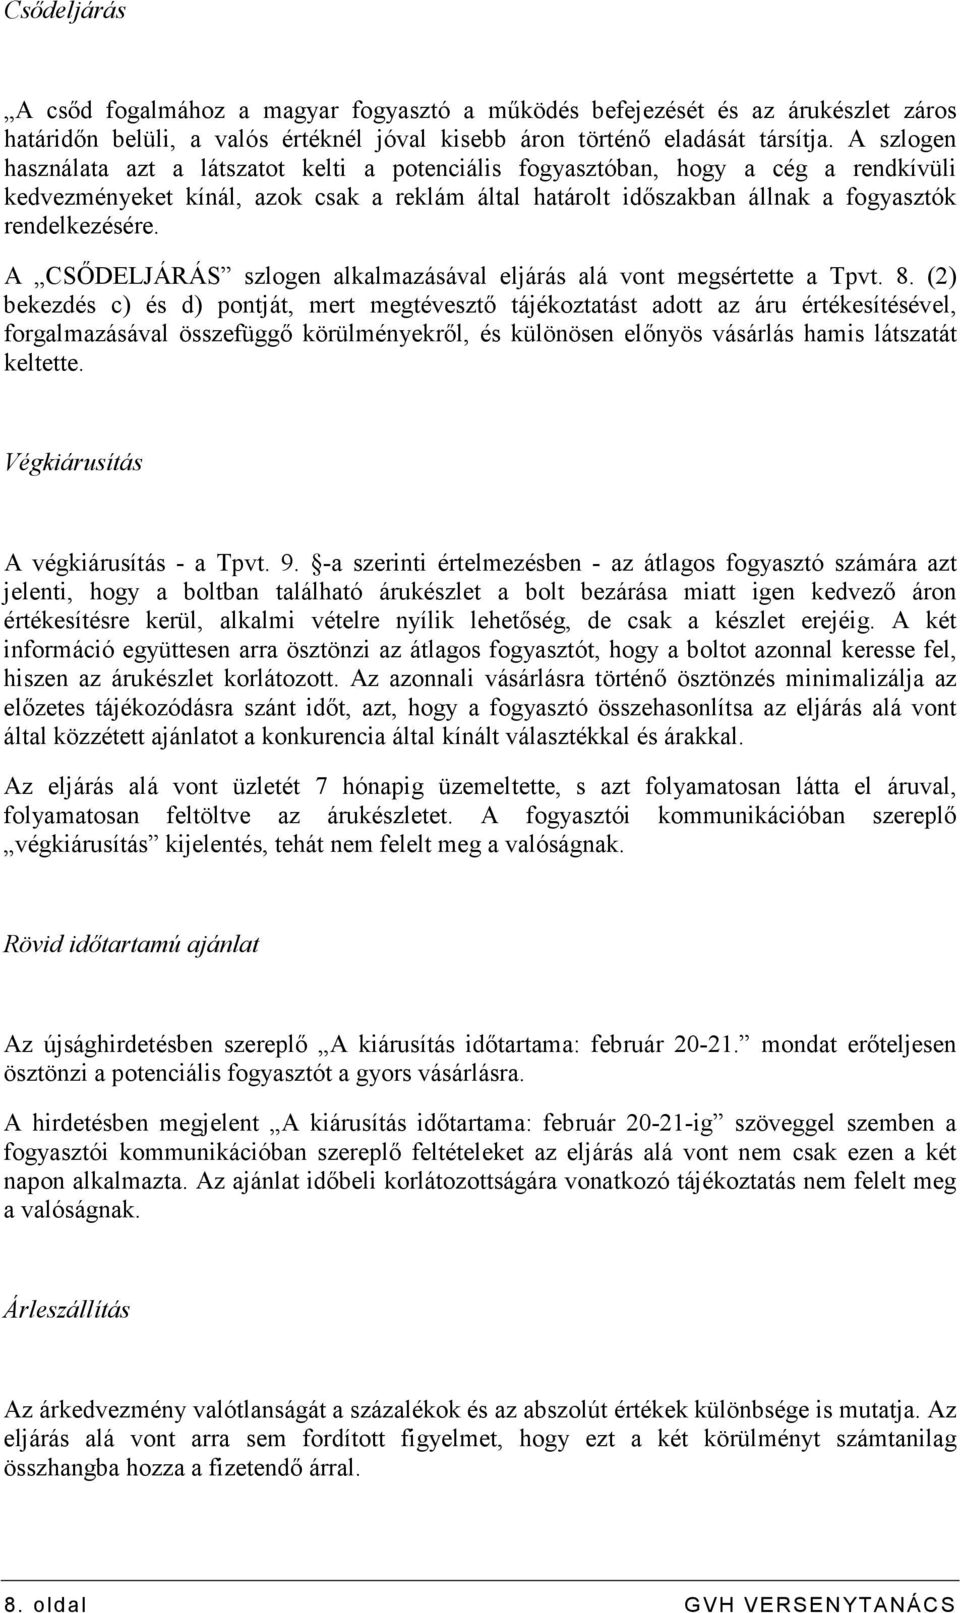 A CSİDELJÁRÁS szlogen alkalmazásával eljárás alá vont megsértette a Tpvt. 8.